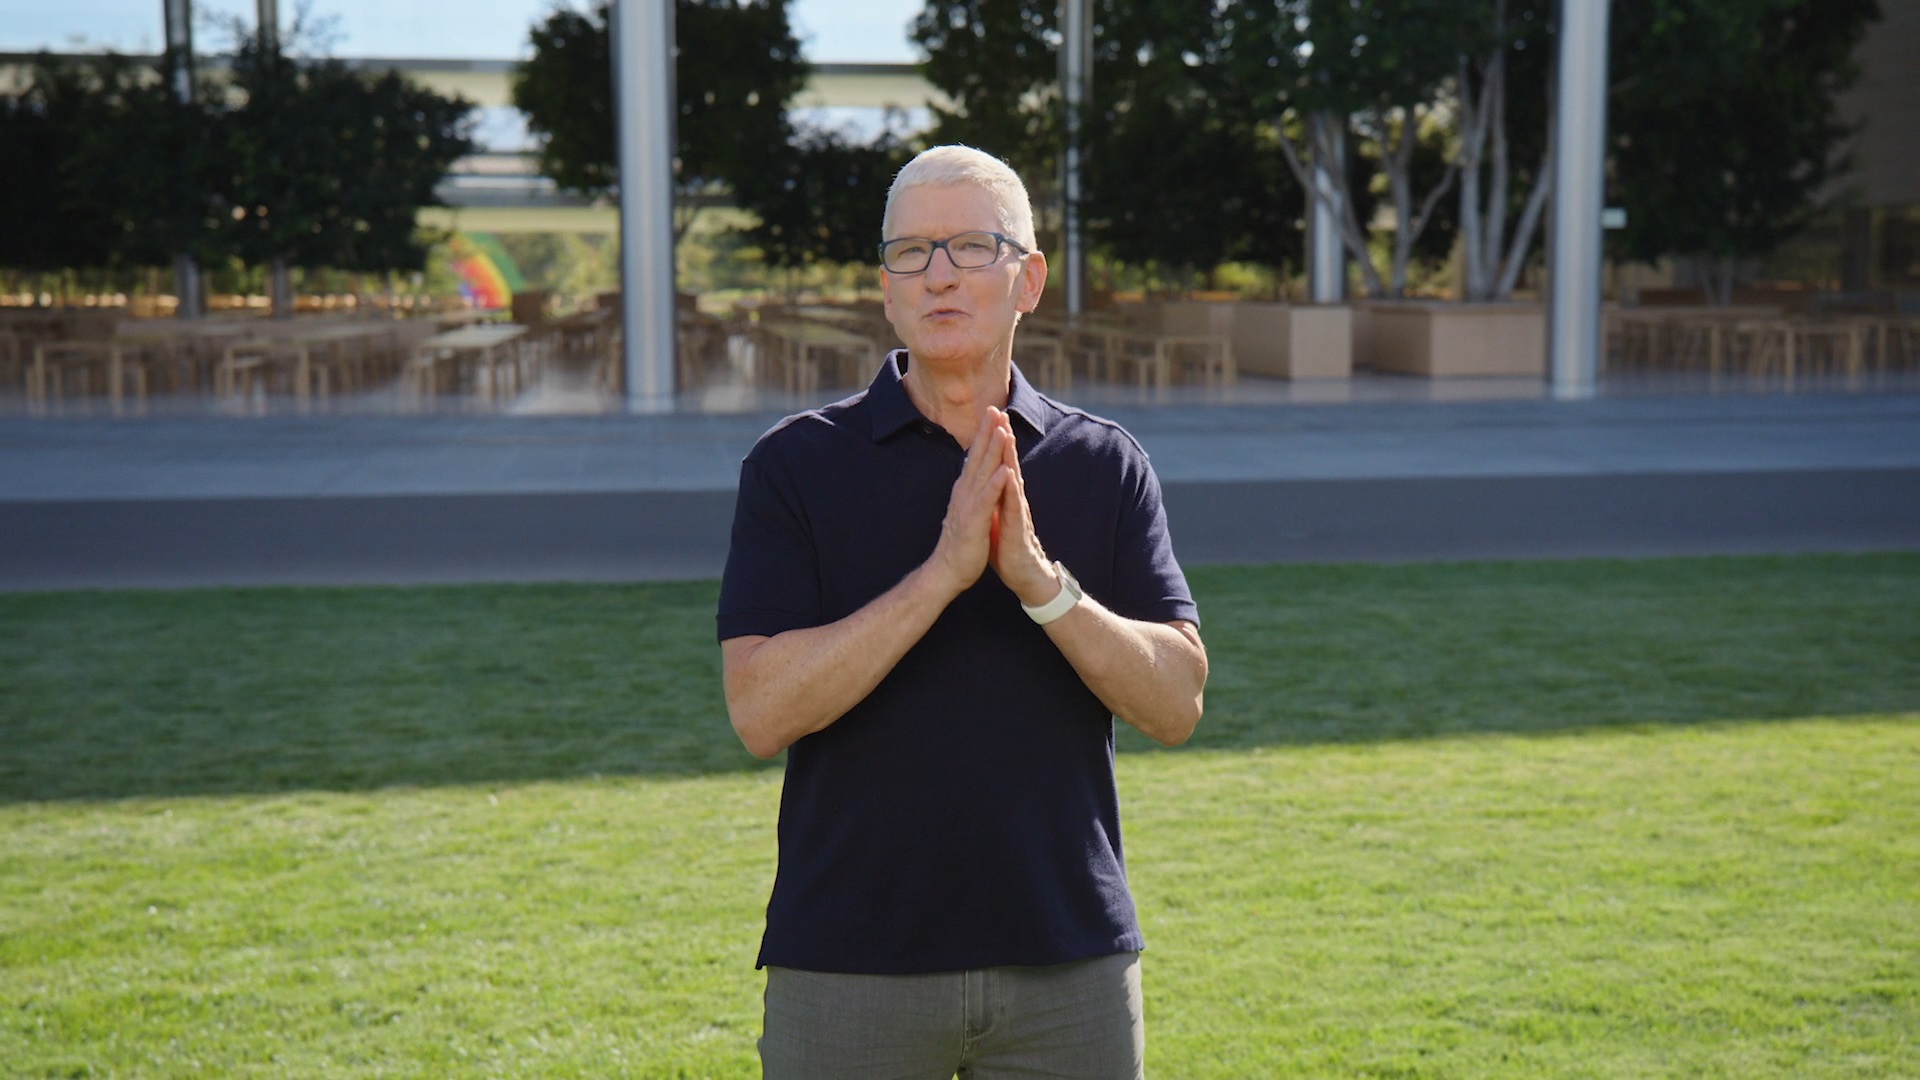 Tim Cook lors d'une présentation Apple sur un terrain en herbe.